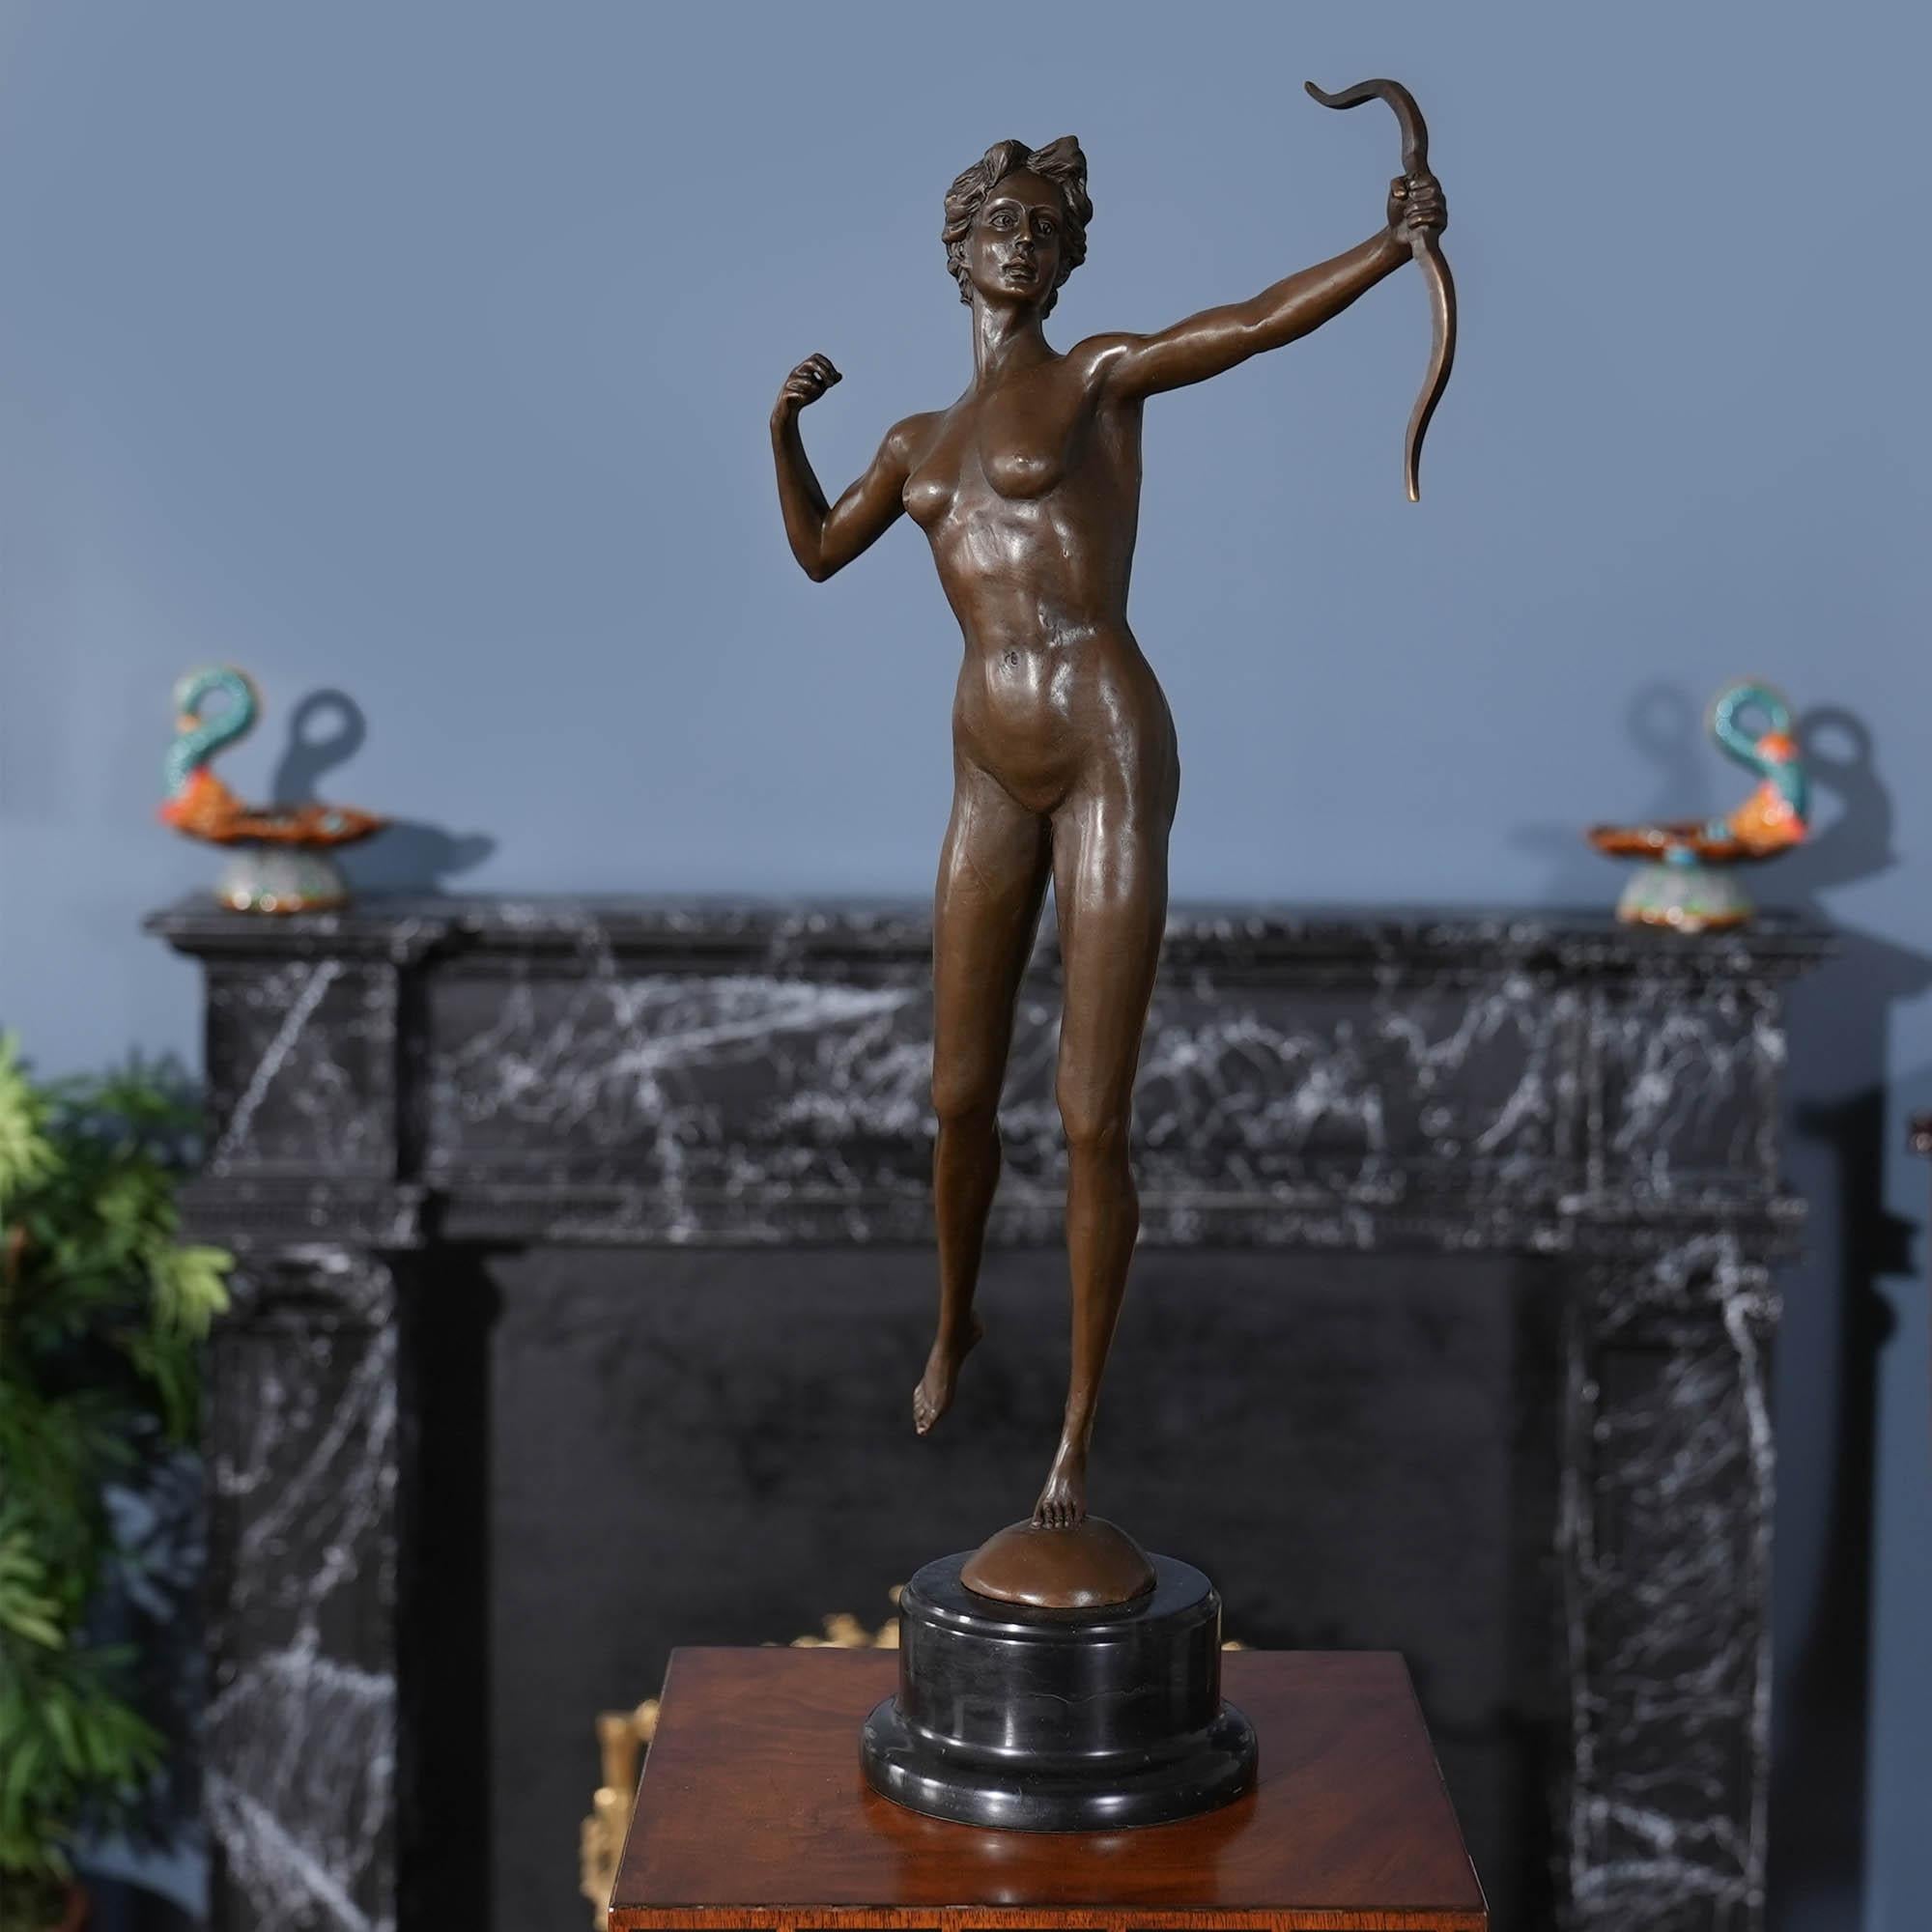 Anmutig, auch wenn sie still steht, ist die Bronze Diana die Jägerin auf Marmorsockel eine auffällige Ergänzung für jede Umgebung. Die Bronzestatue der Diana wurde im traditionellen Wachsausschmelzverfahren gegossen und mit handgearbeiteten Details